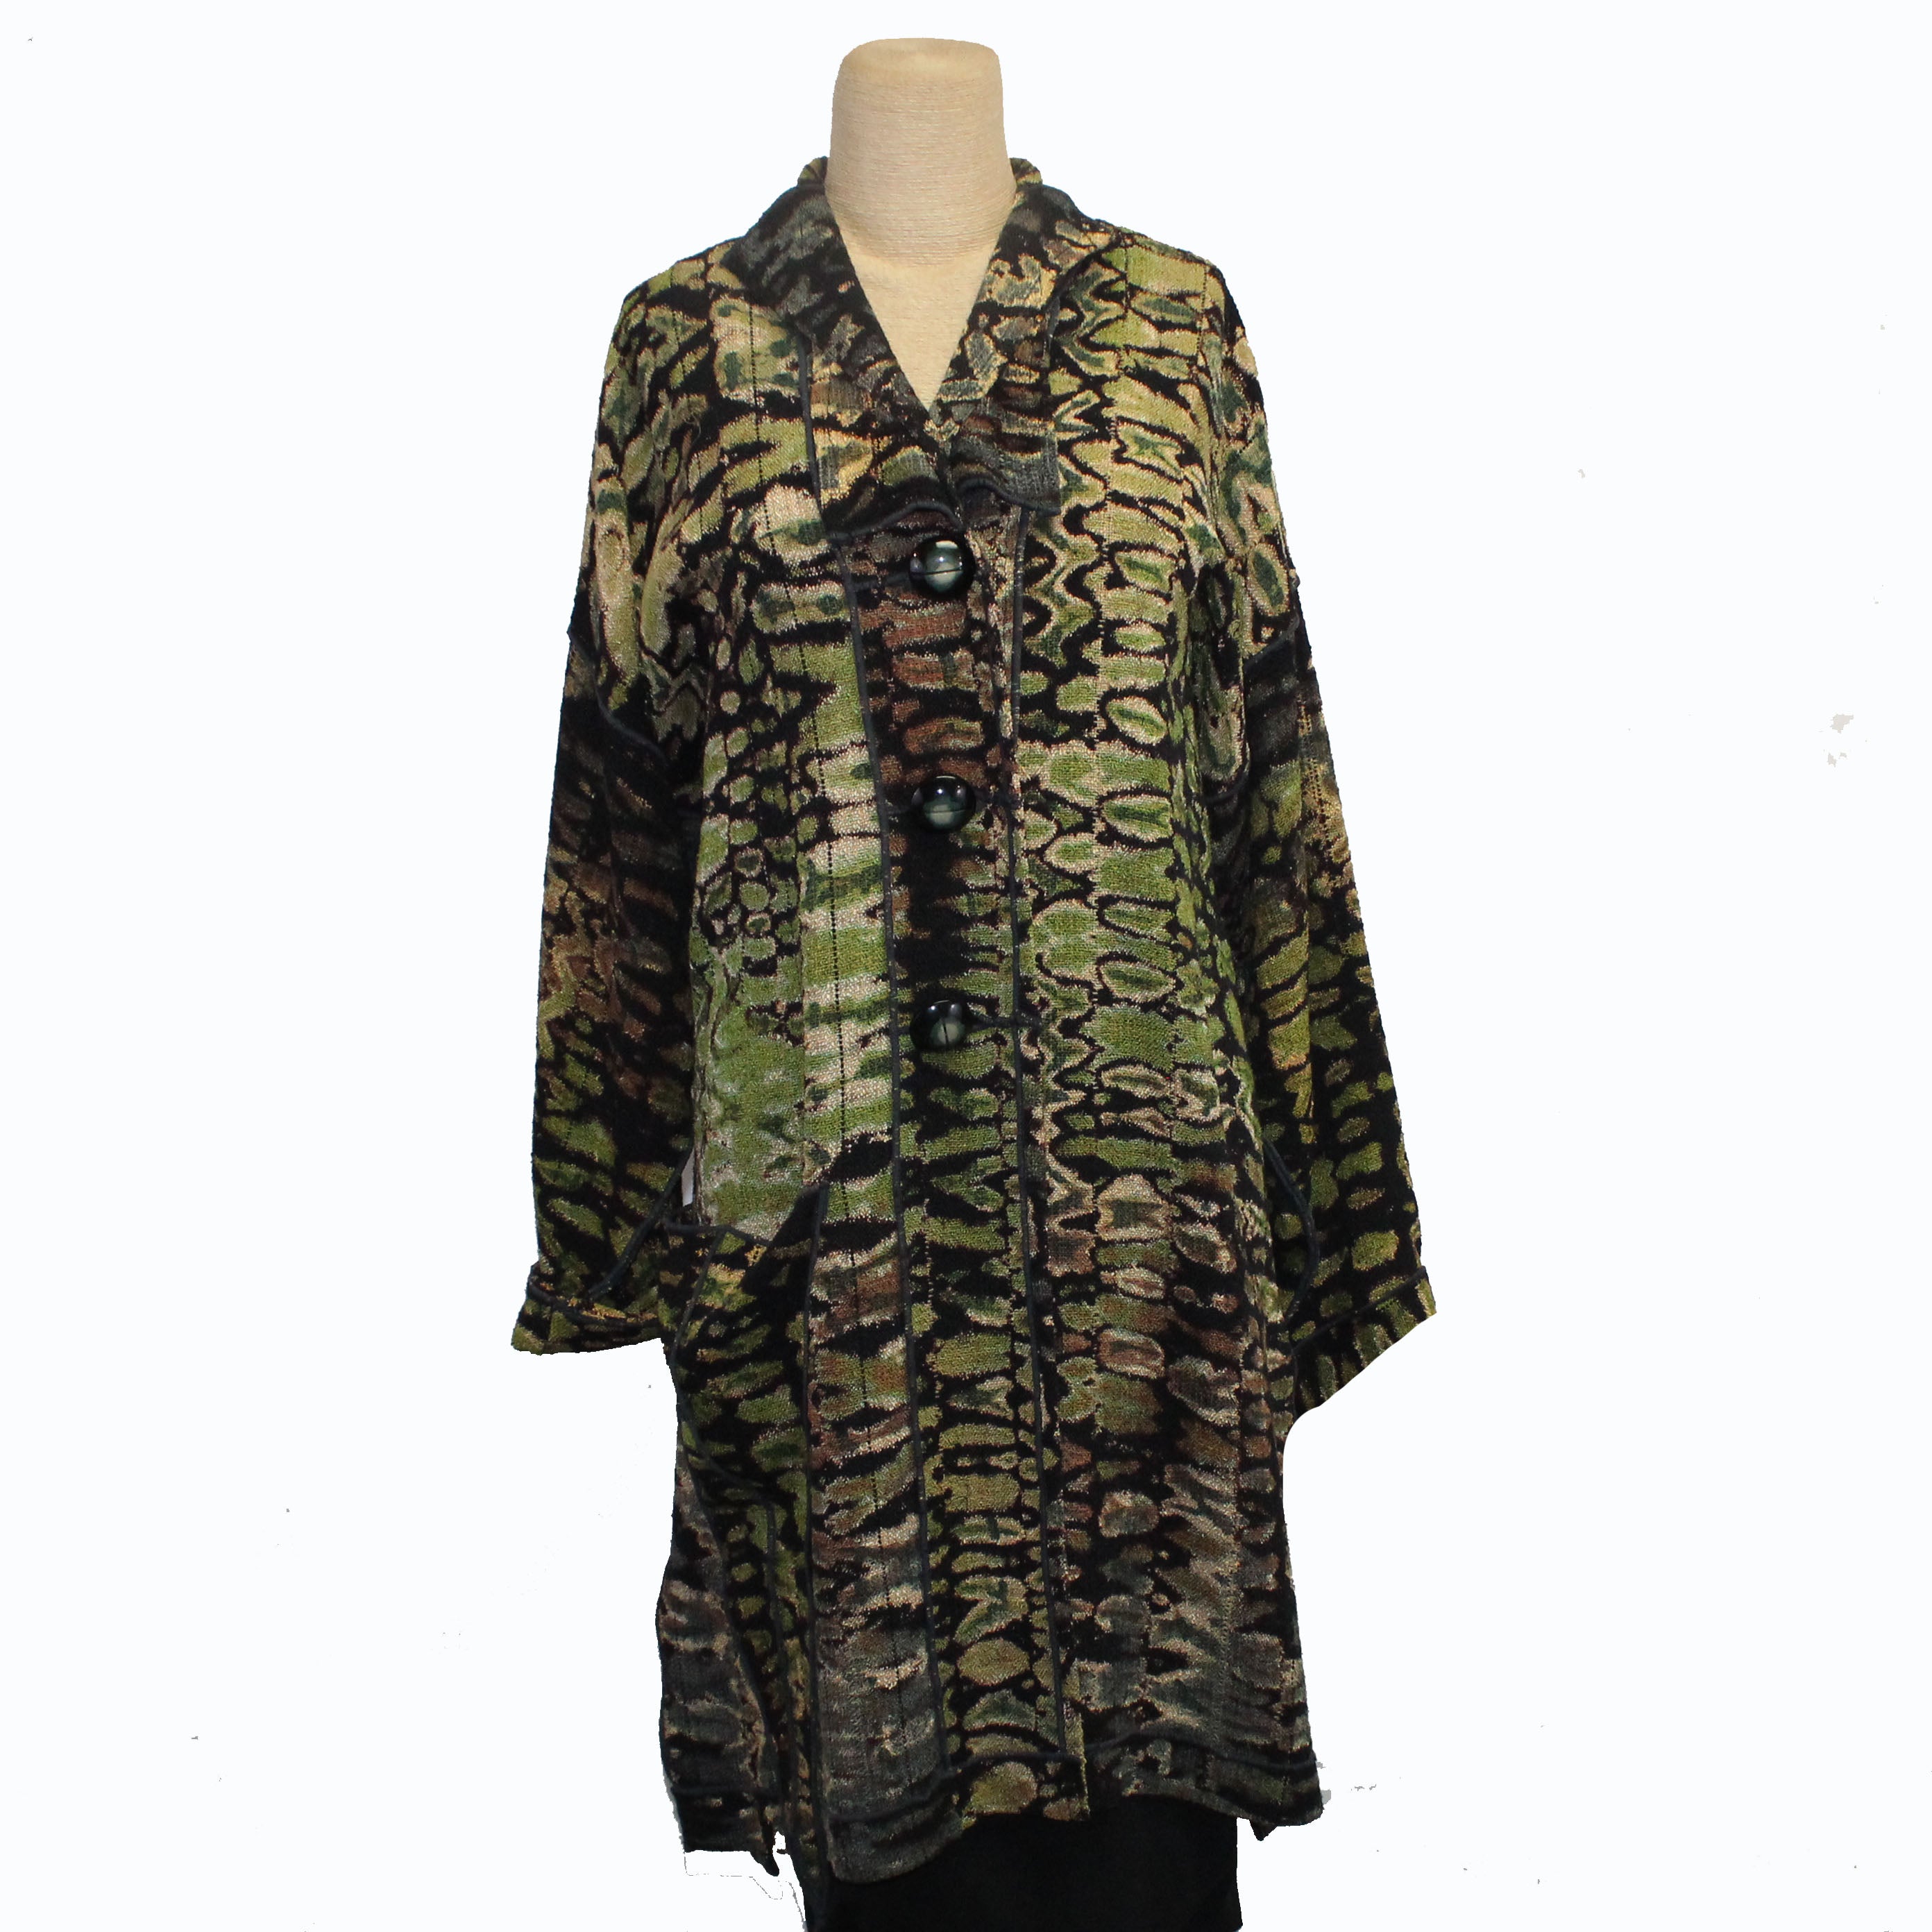 Judith Bird Coat, Shibori, Urban Moss, L